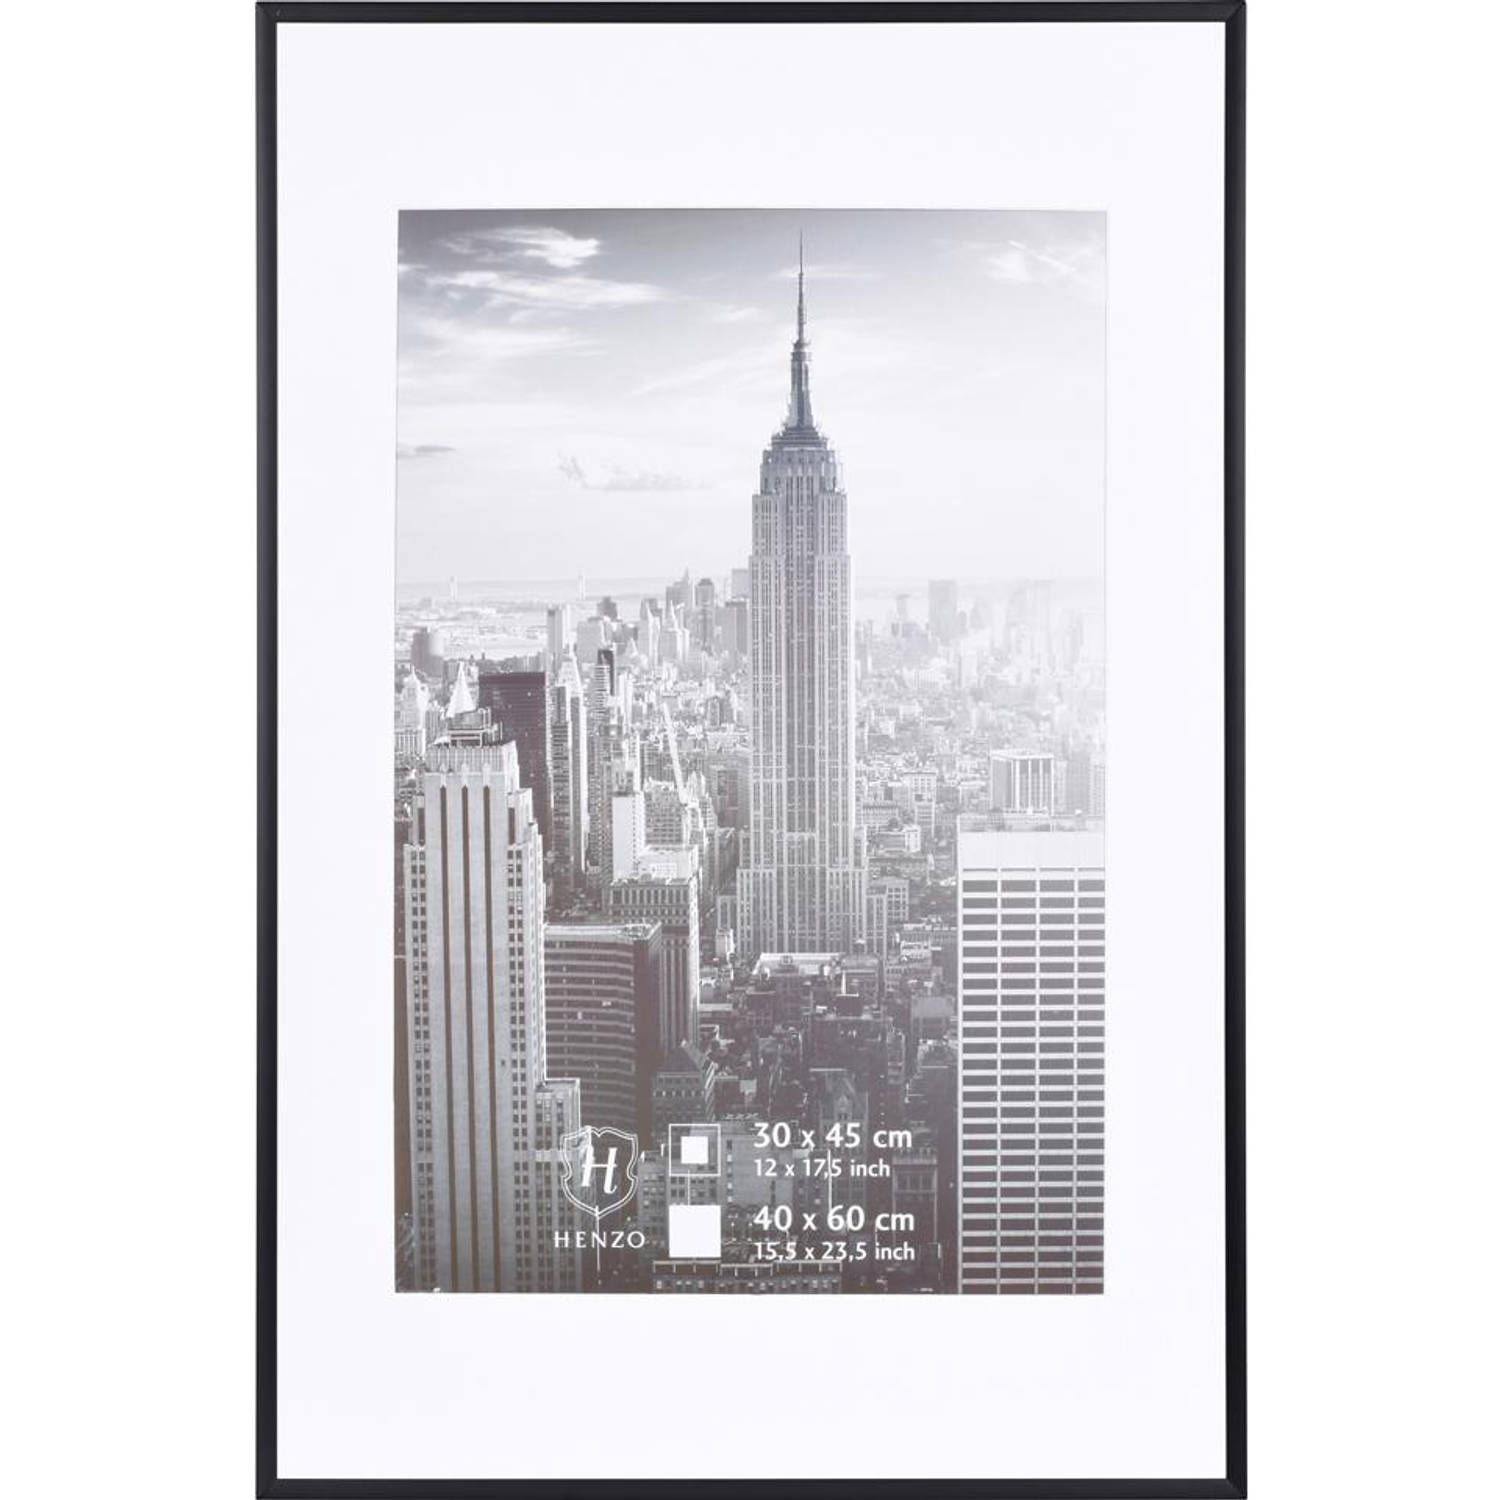 Henzo fotolijst Manhattan 40x60 cm zwart